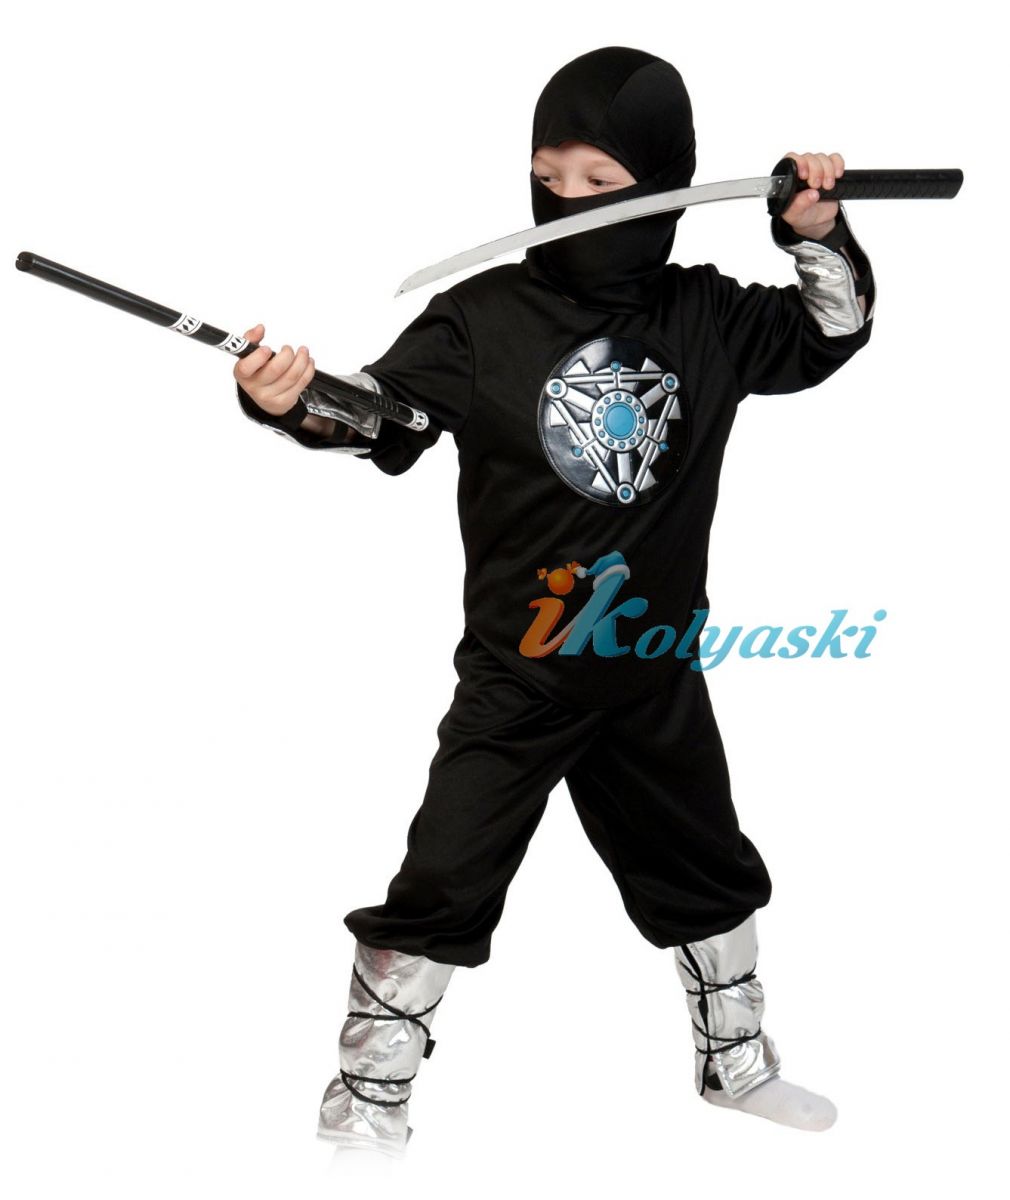 Костюм ниндзя японского воина шпиона для мальчика, костюм Ниндзя Нуб Сайбот или Смоук из Мортал Комбат - купить по выгодной цене в Москве самовывозом или с доставкой, отправим по РФ, звоните +7-495-648-67-02. Интернет-магазин продает карнавальные костюмы более 20 лет. Большой ассортимент.